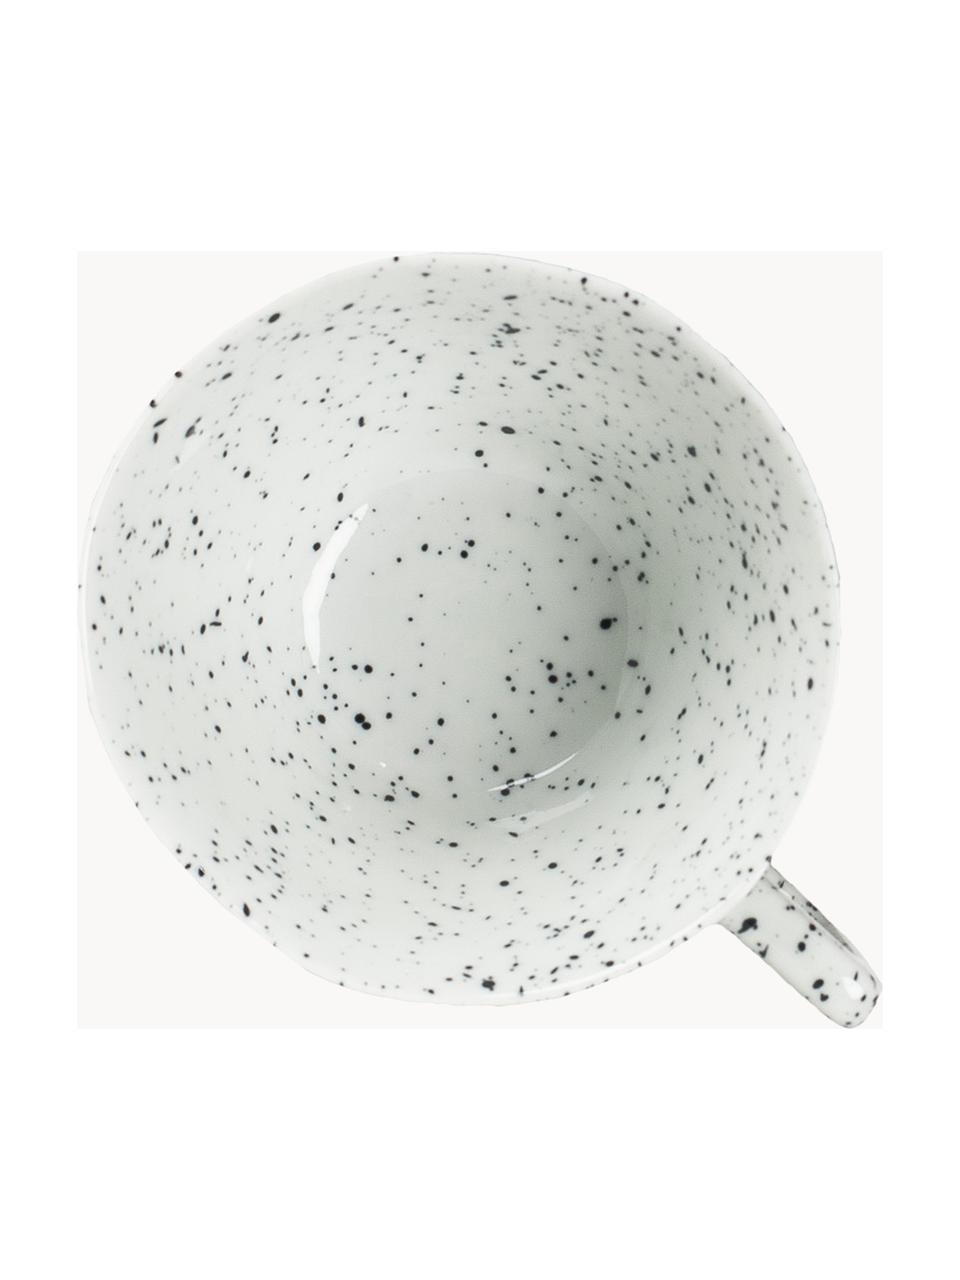 Porseleinen kopje Poppi, 2 stuks, Porselein, Wit, zwart gespikkeld, Ø 11 x H 6 cm, 230 ml